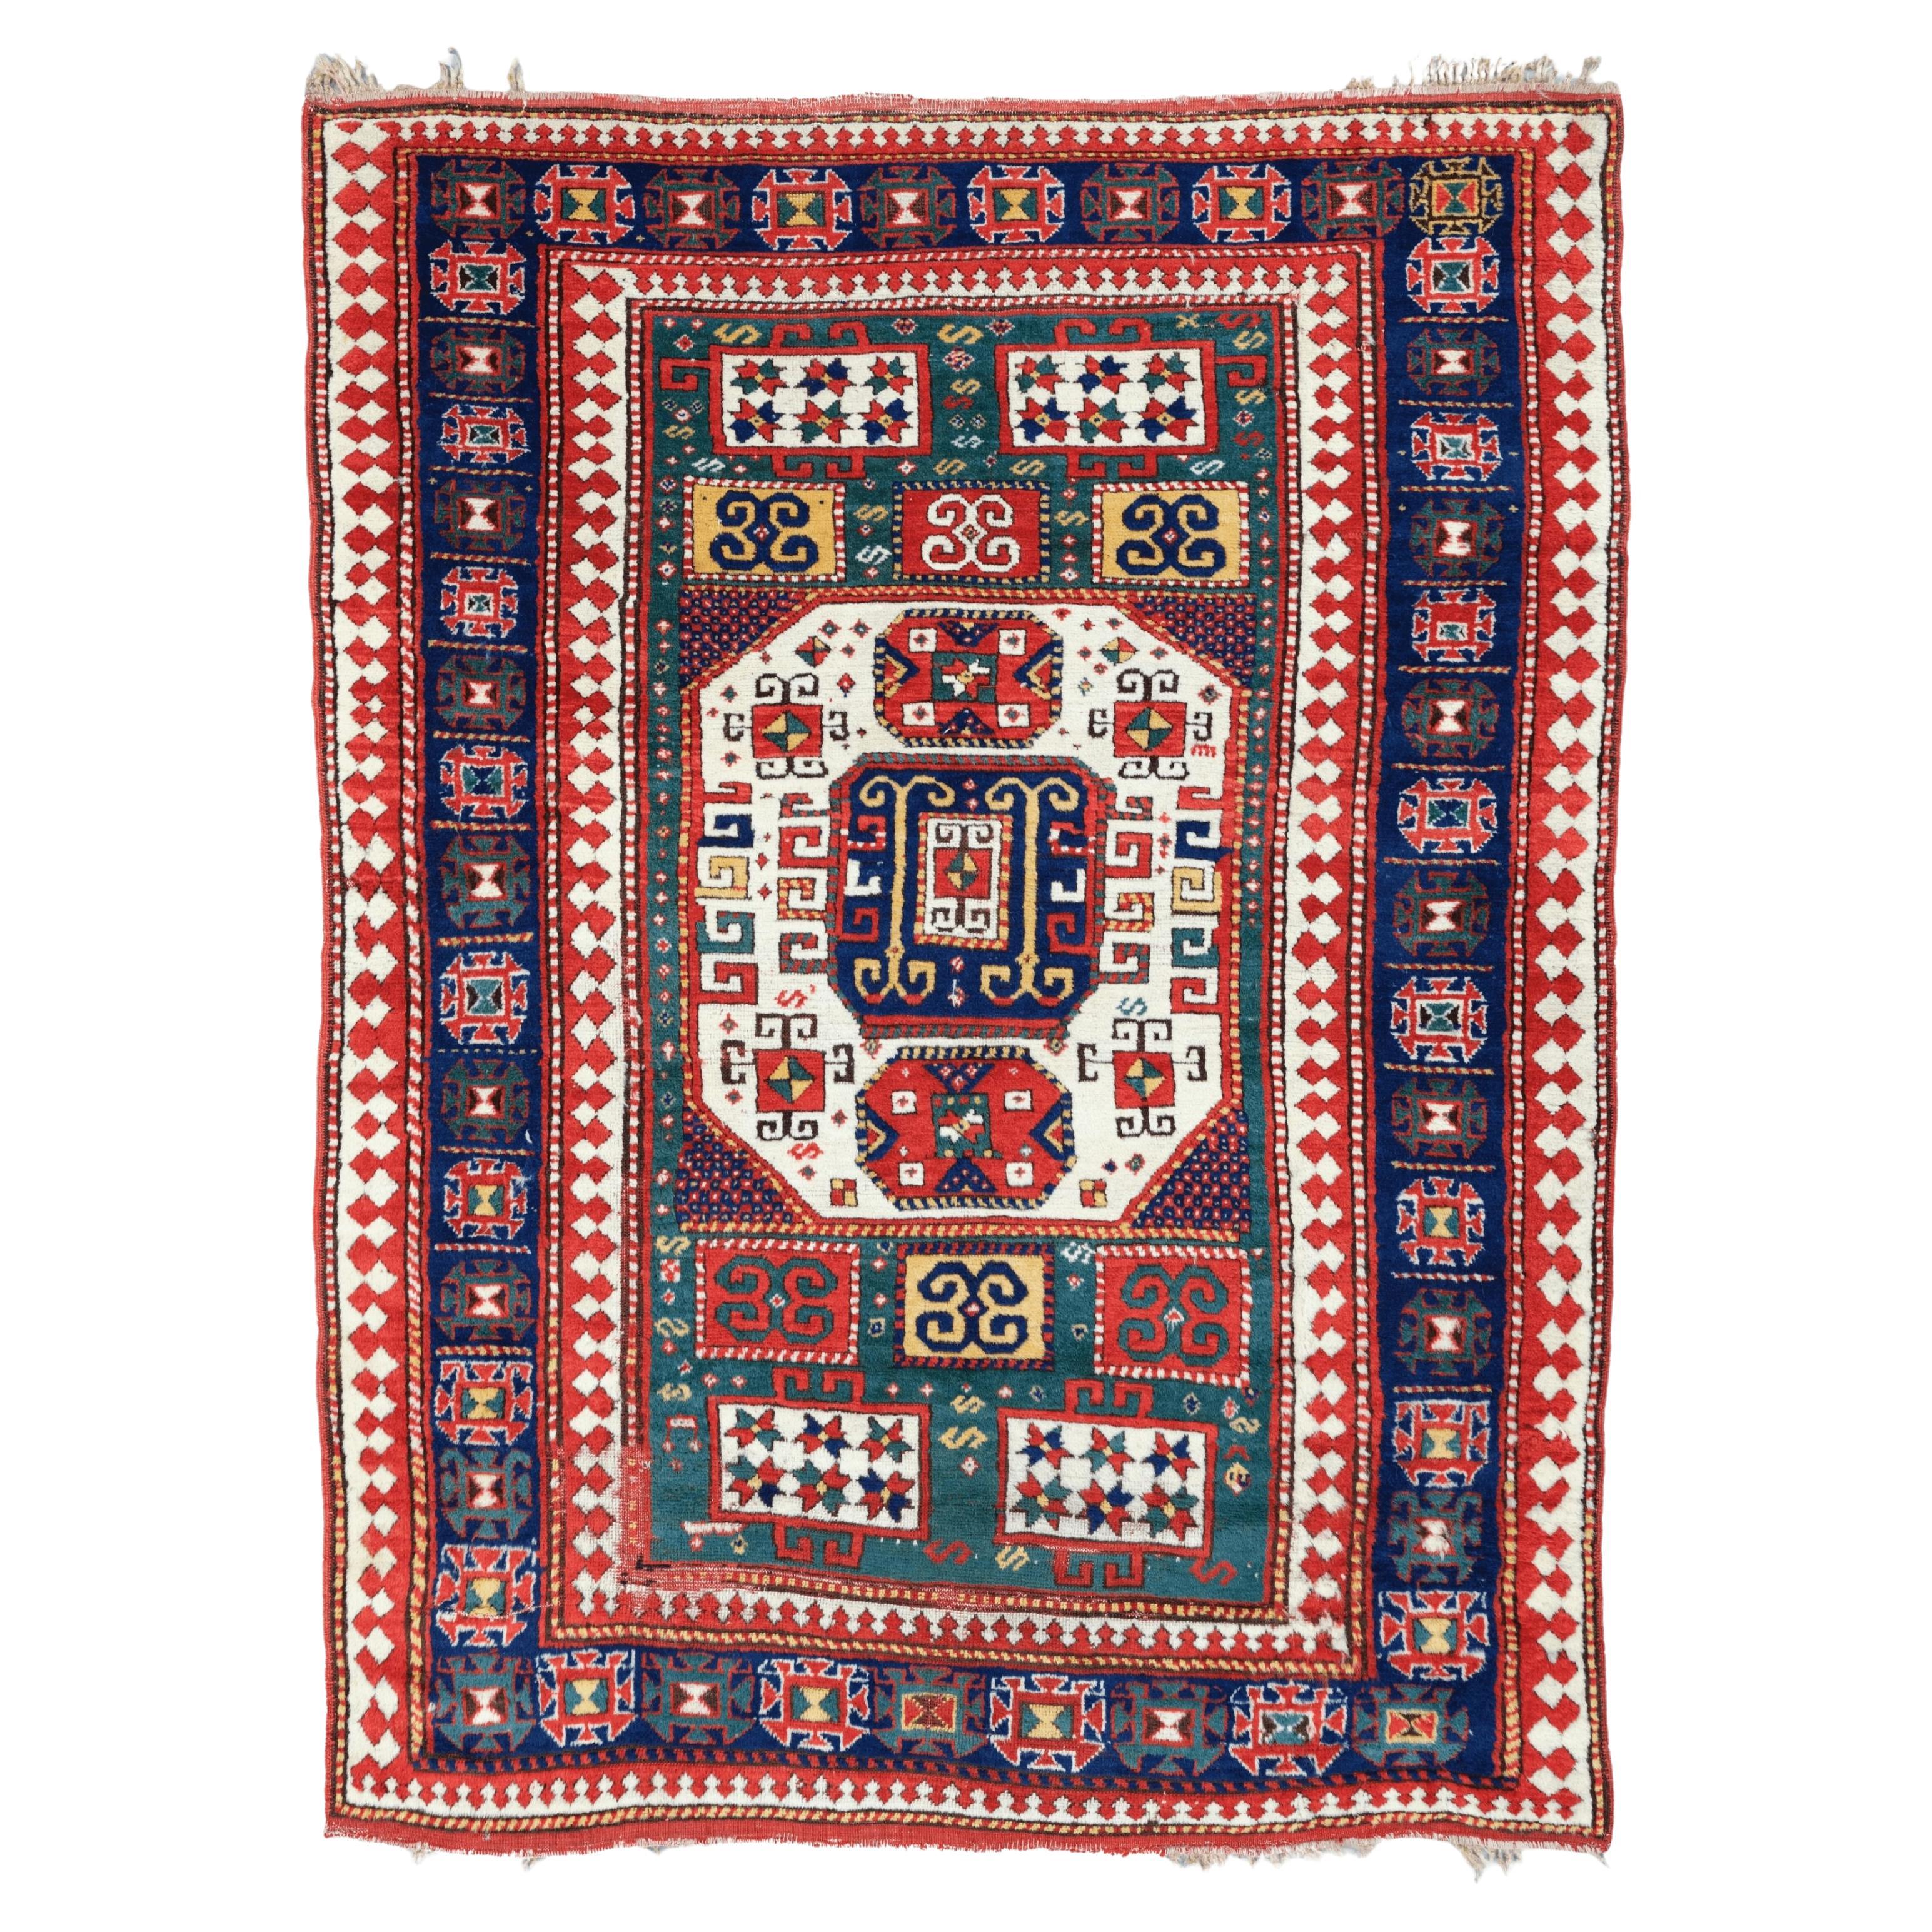 Antiker Karachop-Teppich - Kaukasischer Karachop-Teppich des 19. Jahrhunderts, handgewebter Teppich